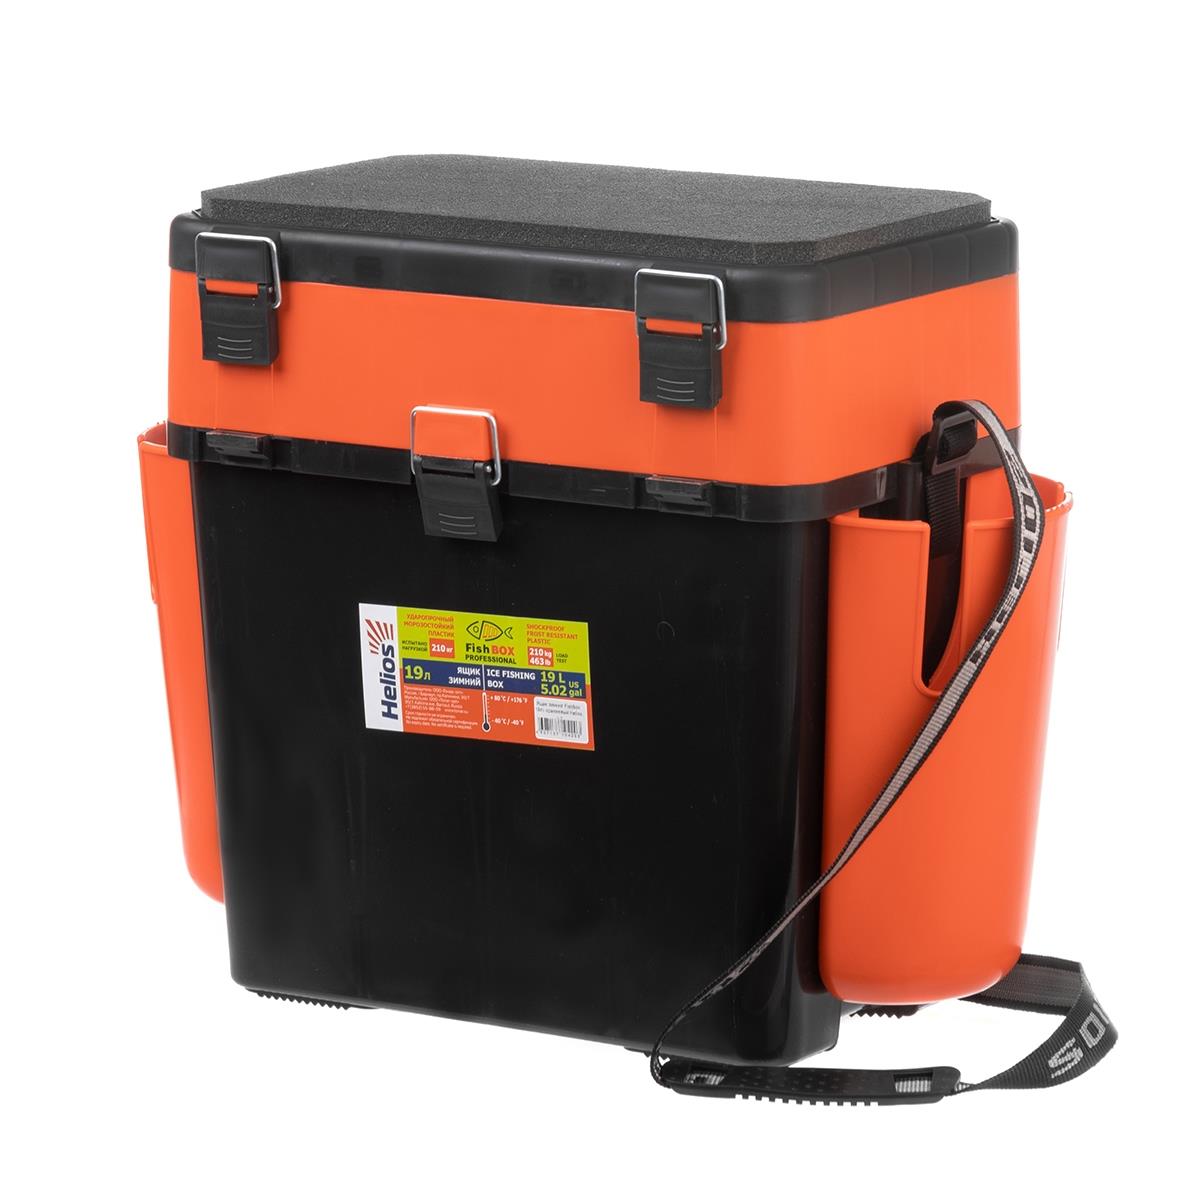 Ящик FishBox двухсекционный 19л оранжевый Helios пластиковый ящик стелла техник v 1 к6 красный 172х102х75мм комплект 6 штук